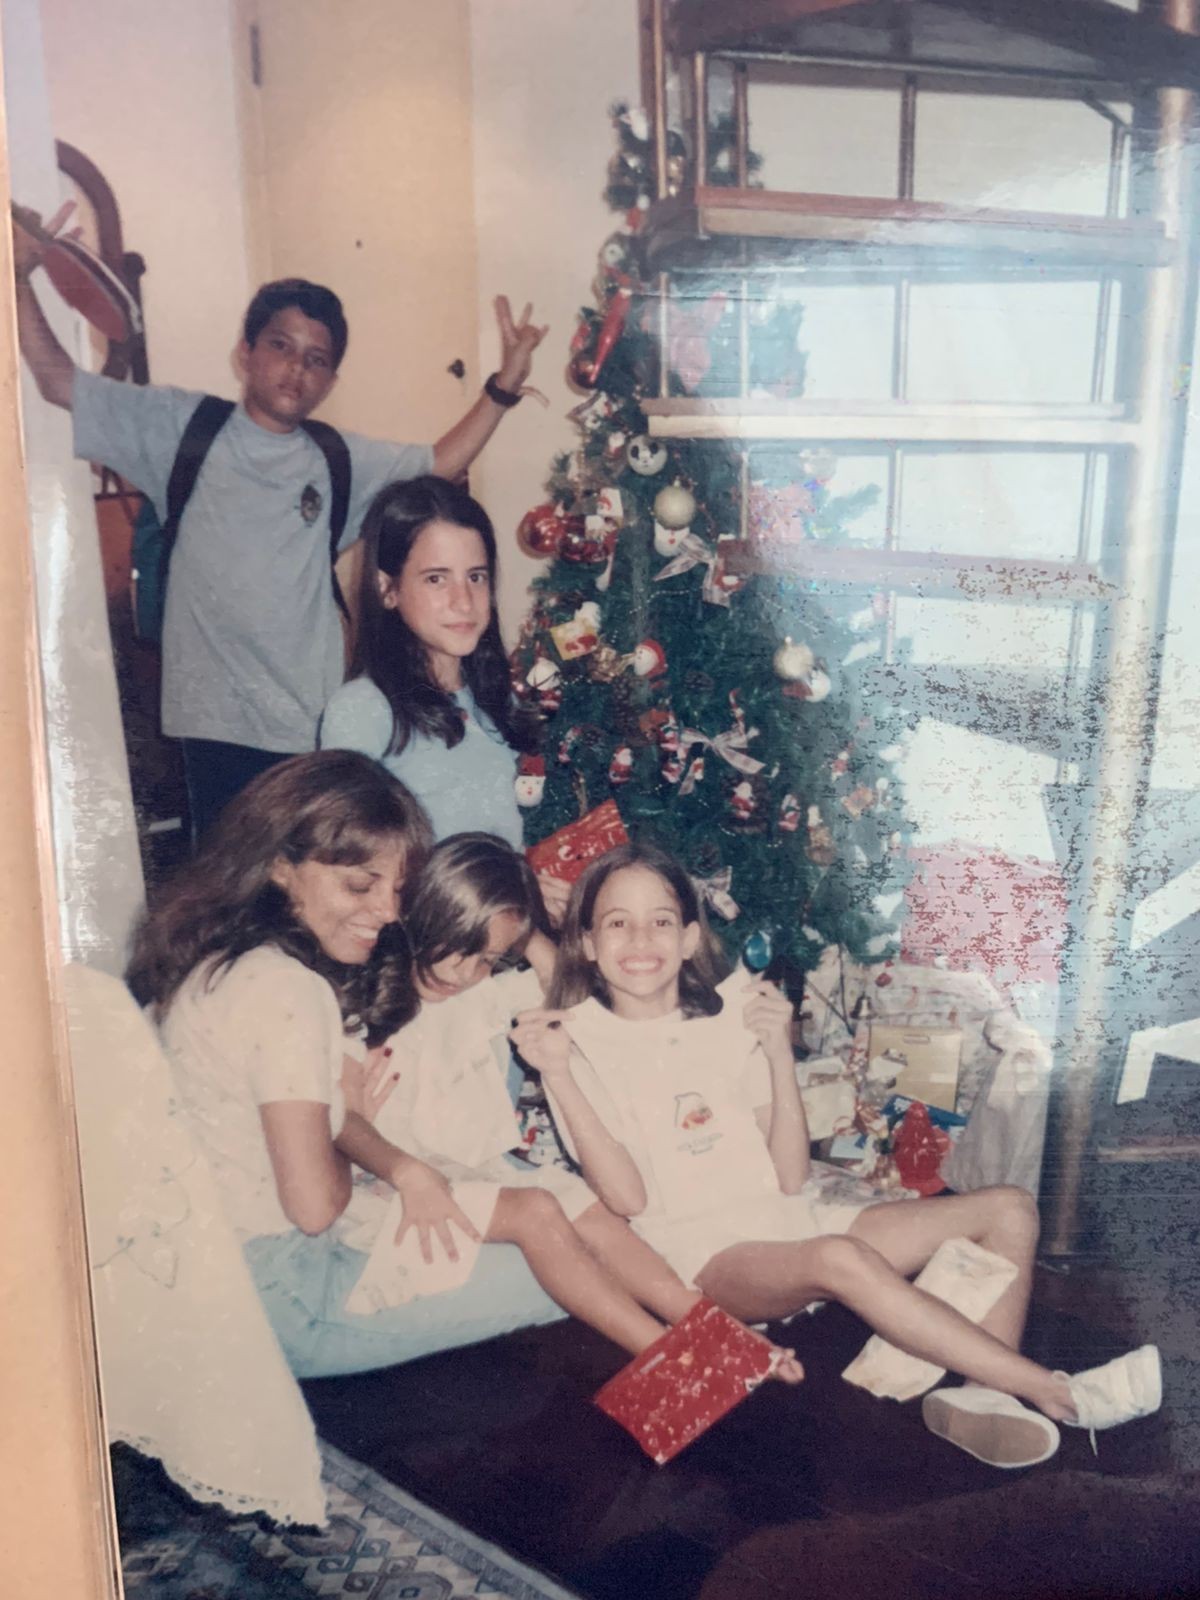 Clarissa e Letícia no Natal com a família (Foto: Clarissa Braga/Arquivo pessoal)